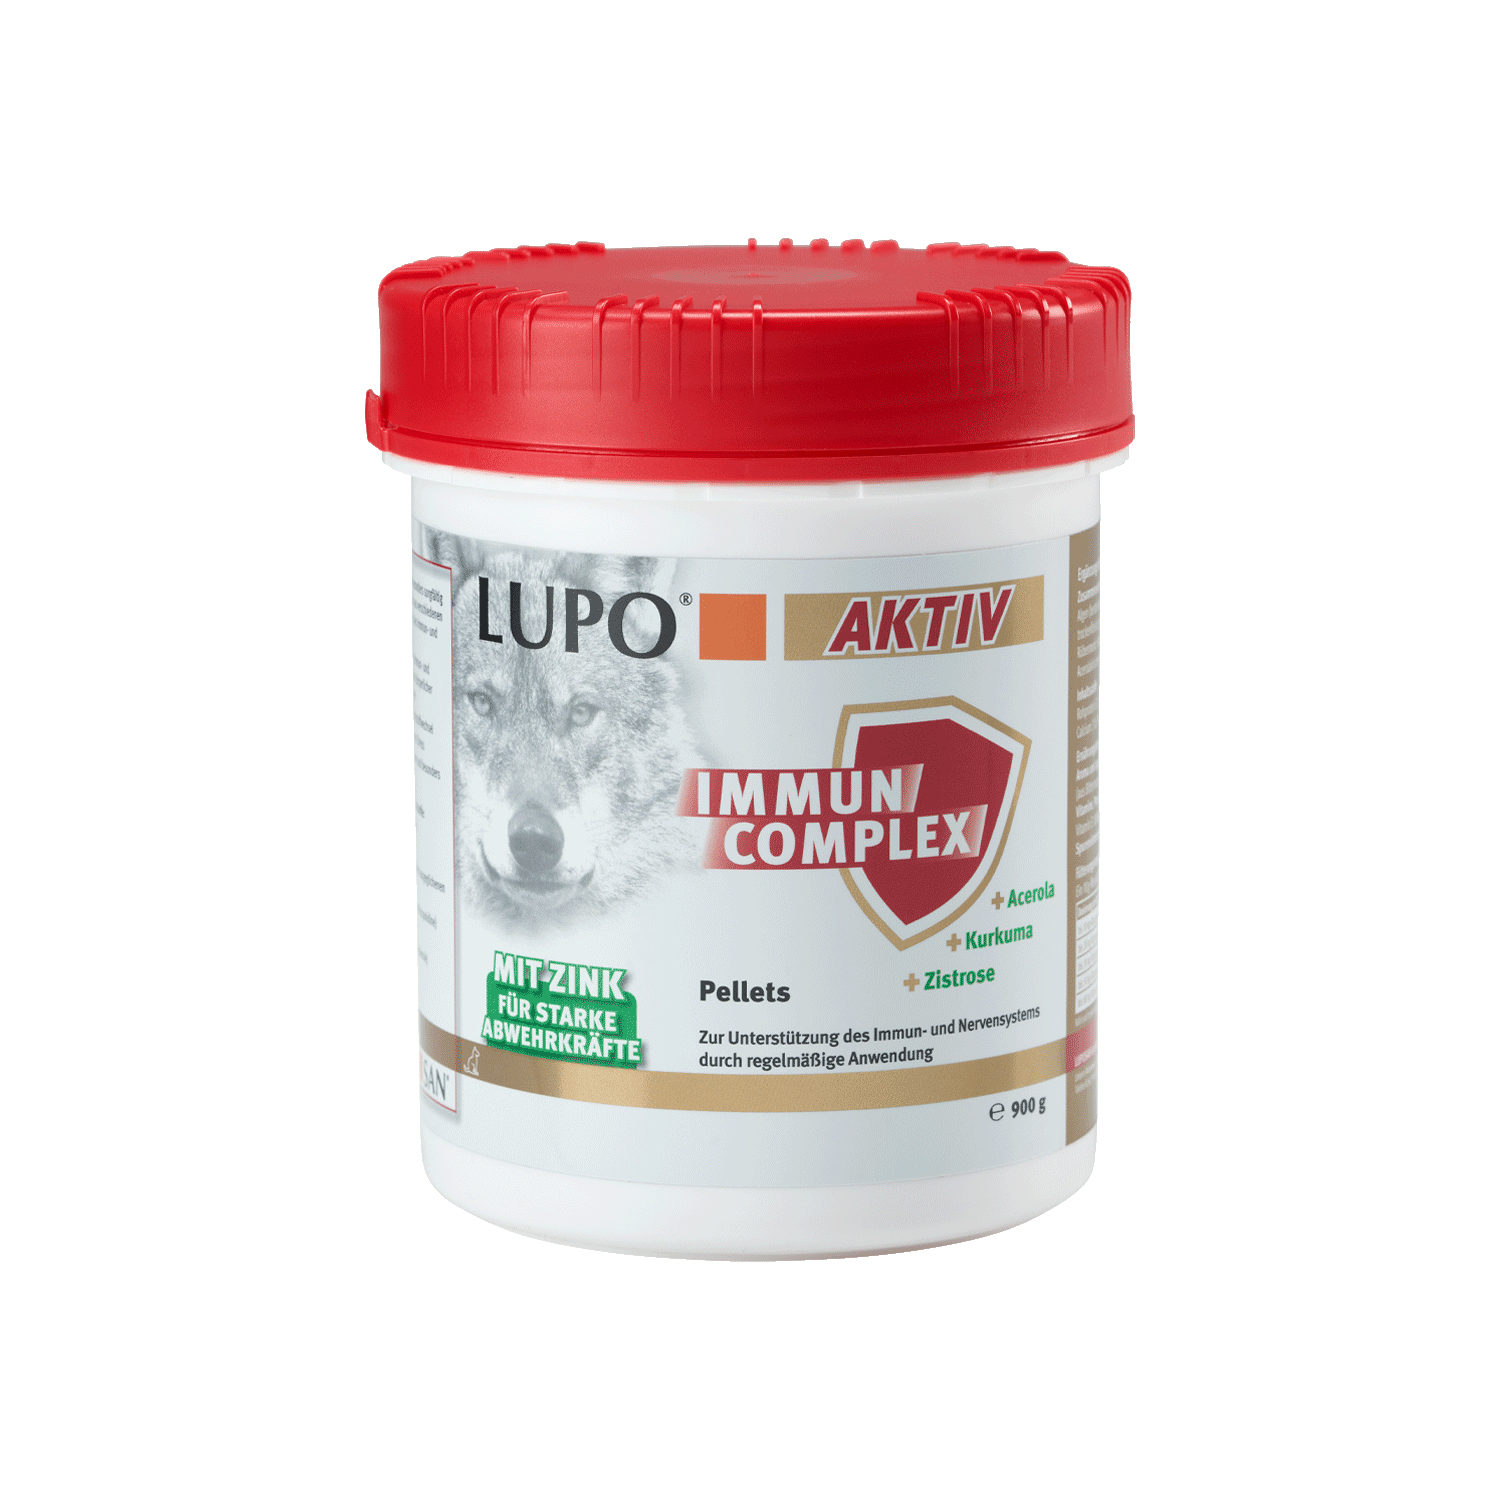 Lupo Aktiv Immun Complex - 1300 g von Luposan